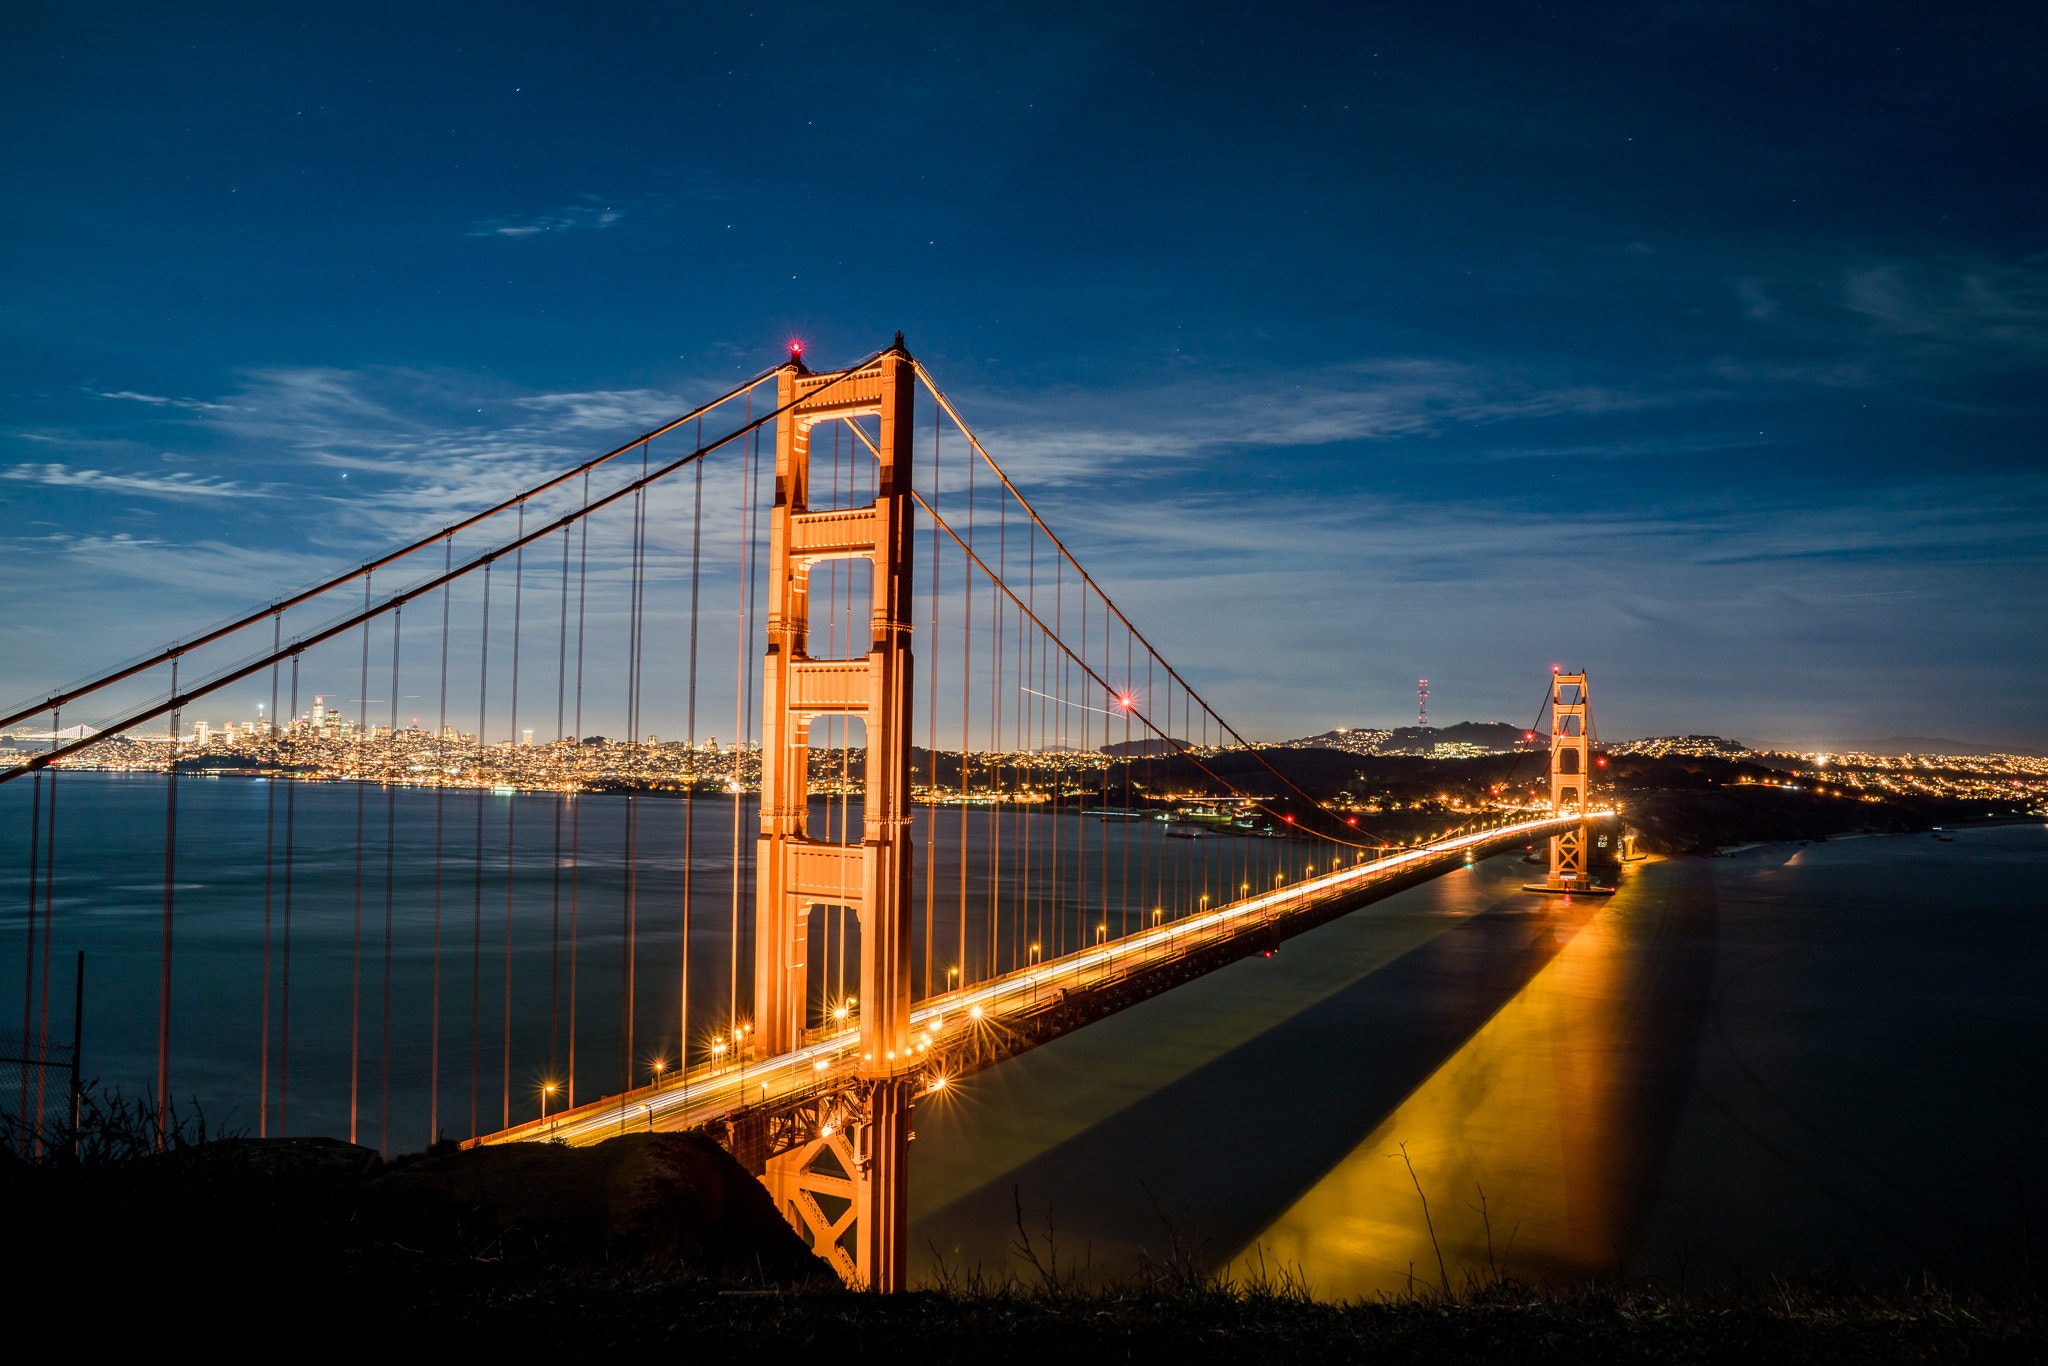 Golden Gate Bridge Wallpapers